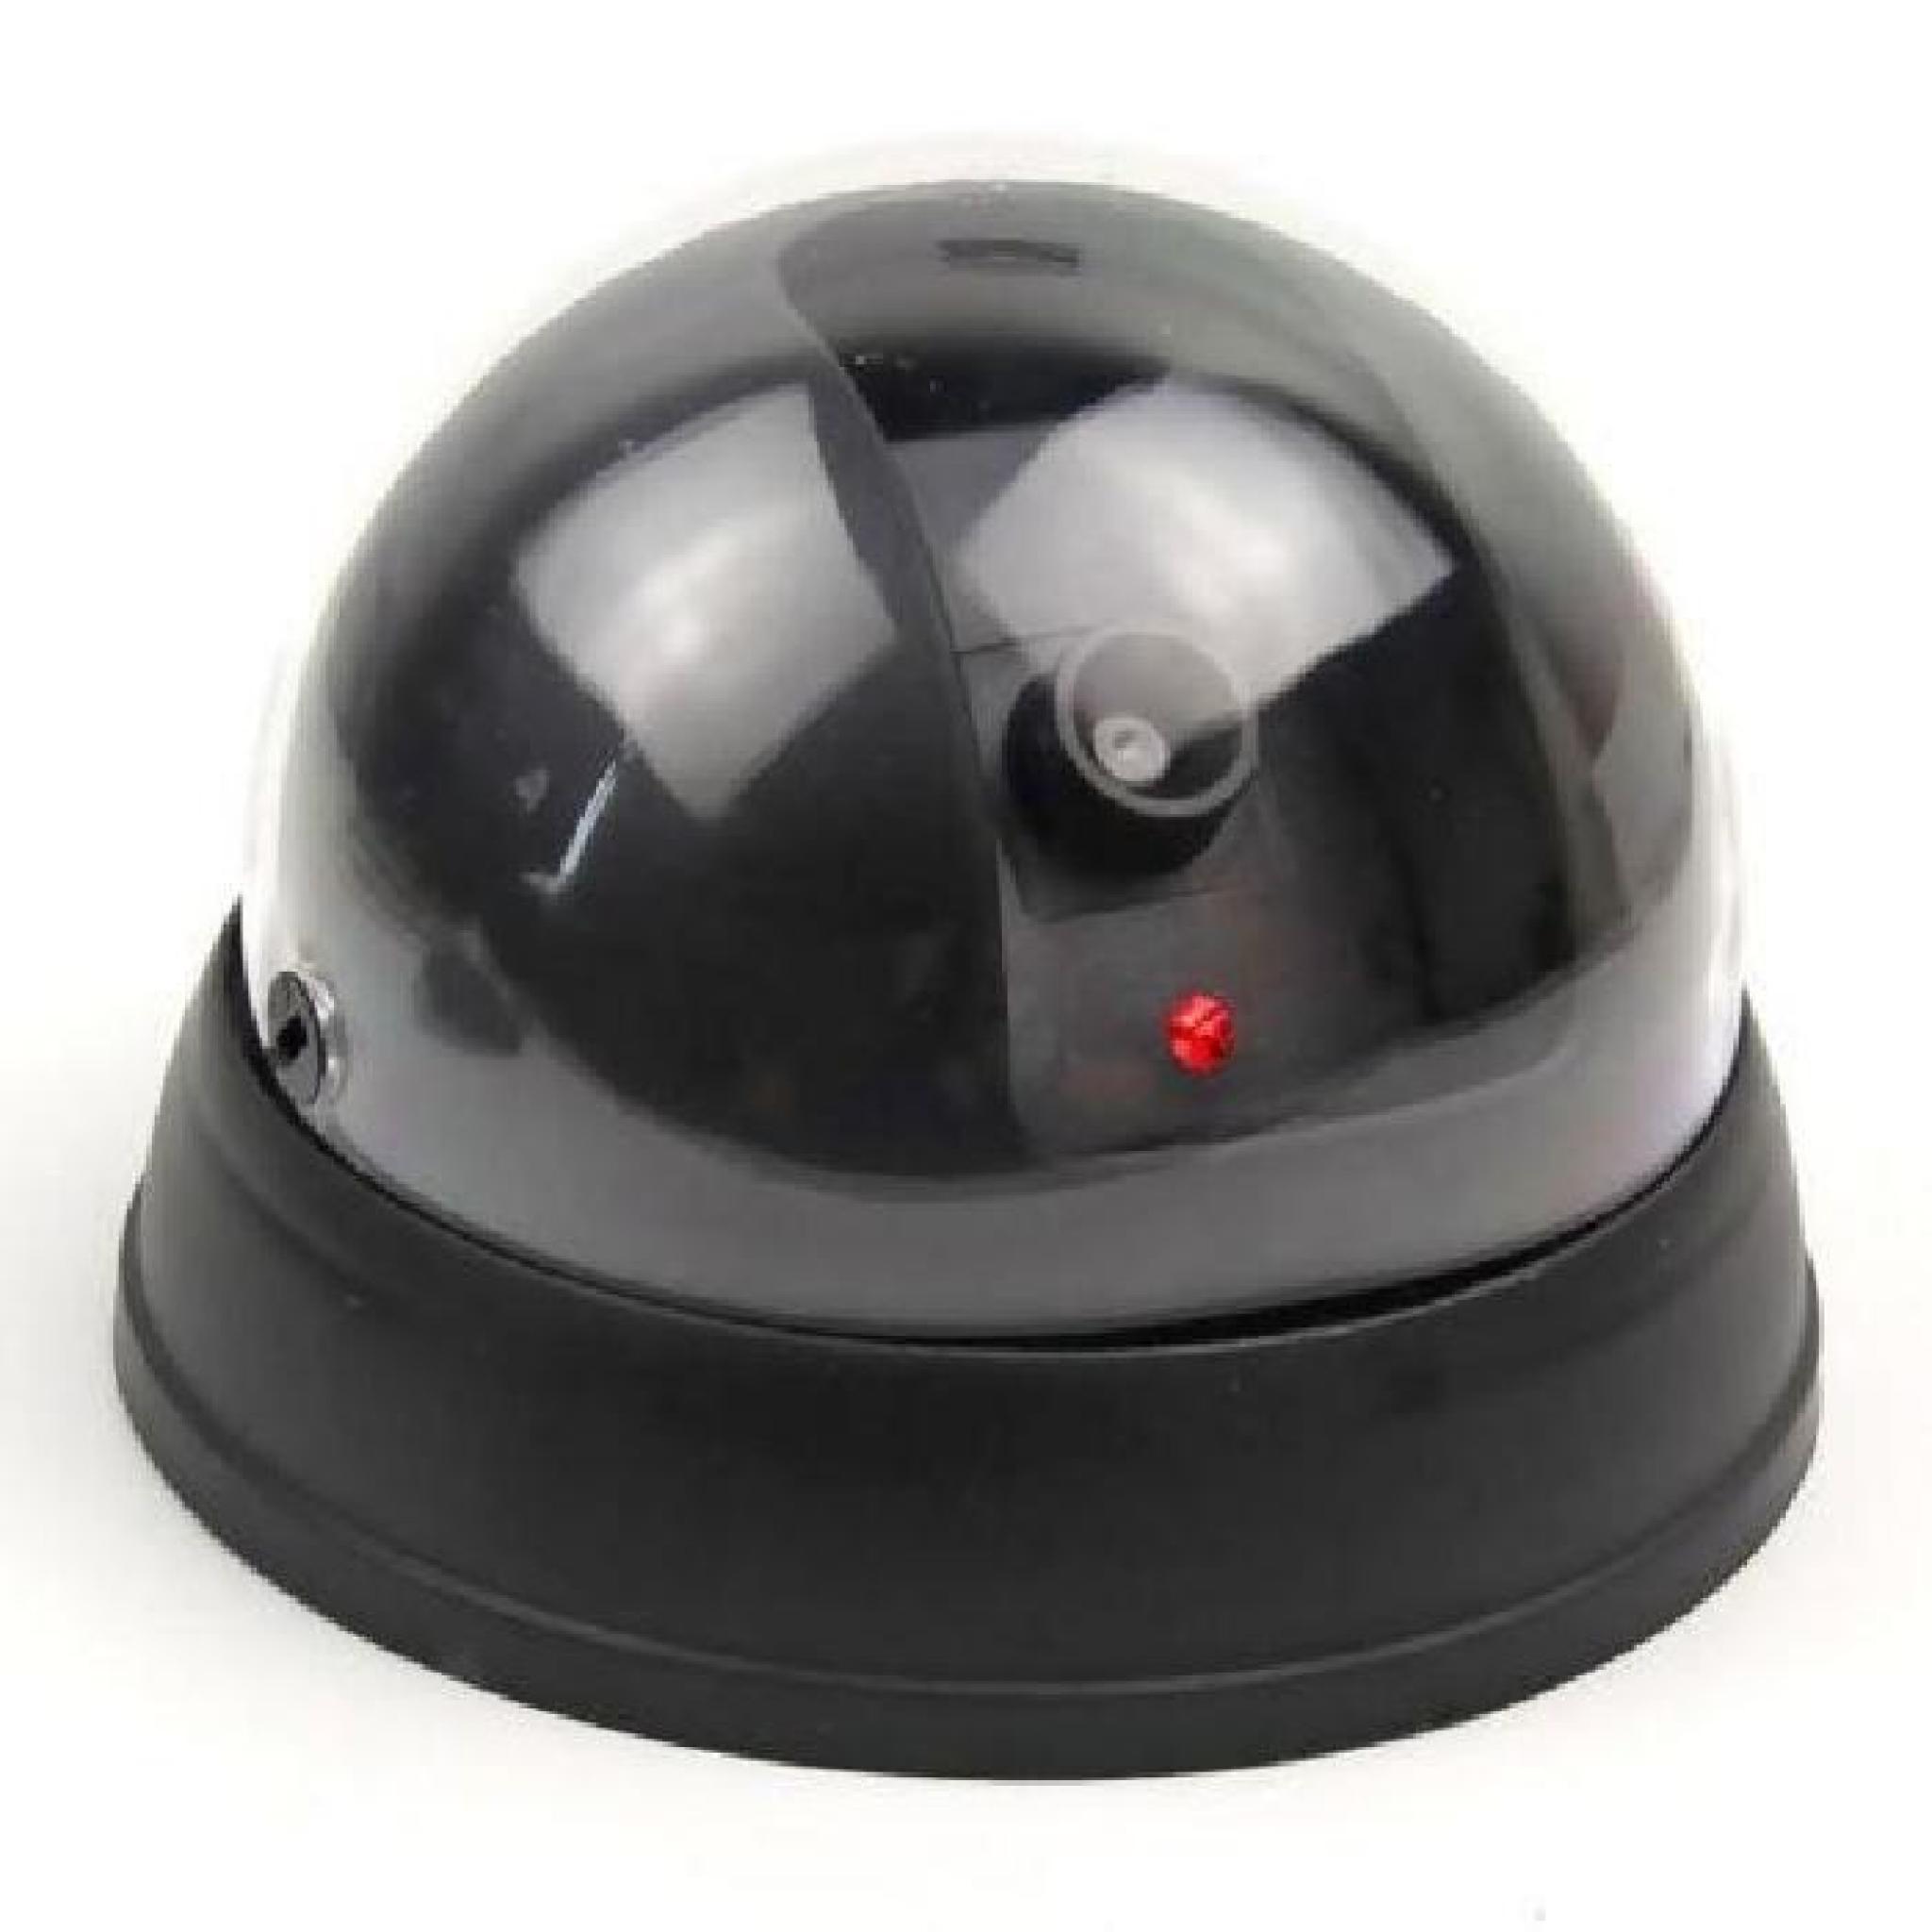 Caméra dôme de sécurité factice fausse Surveillance CCTV clignotant LED rouge